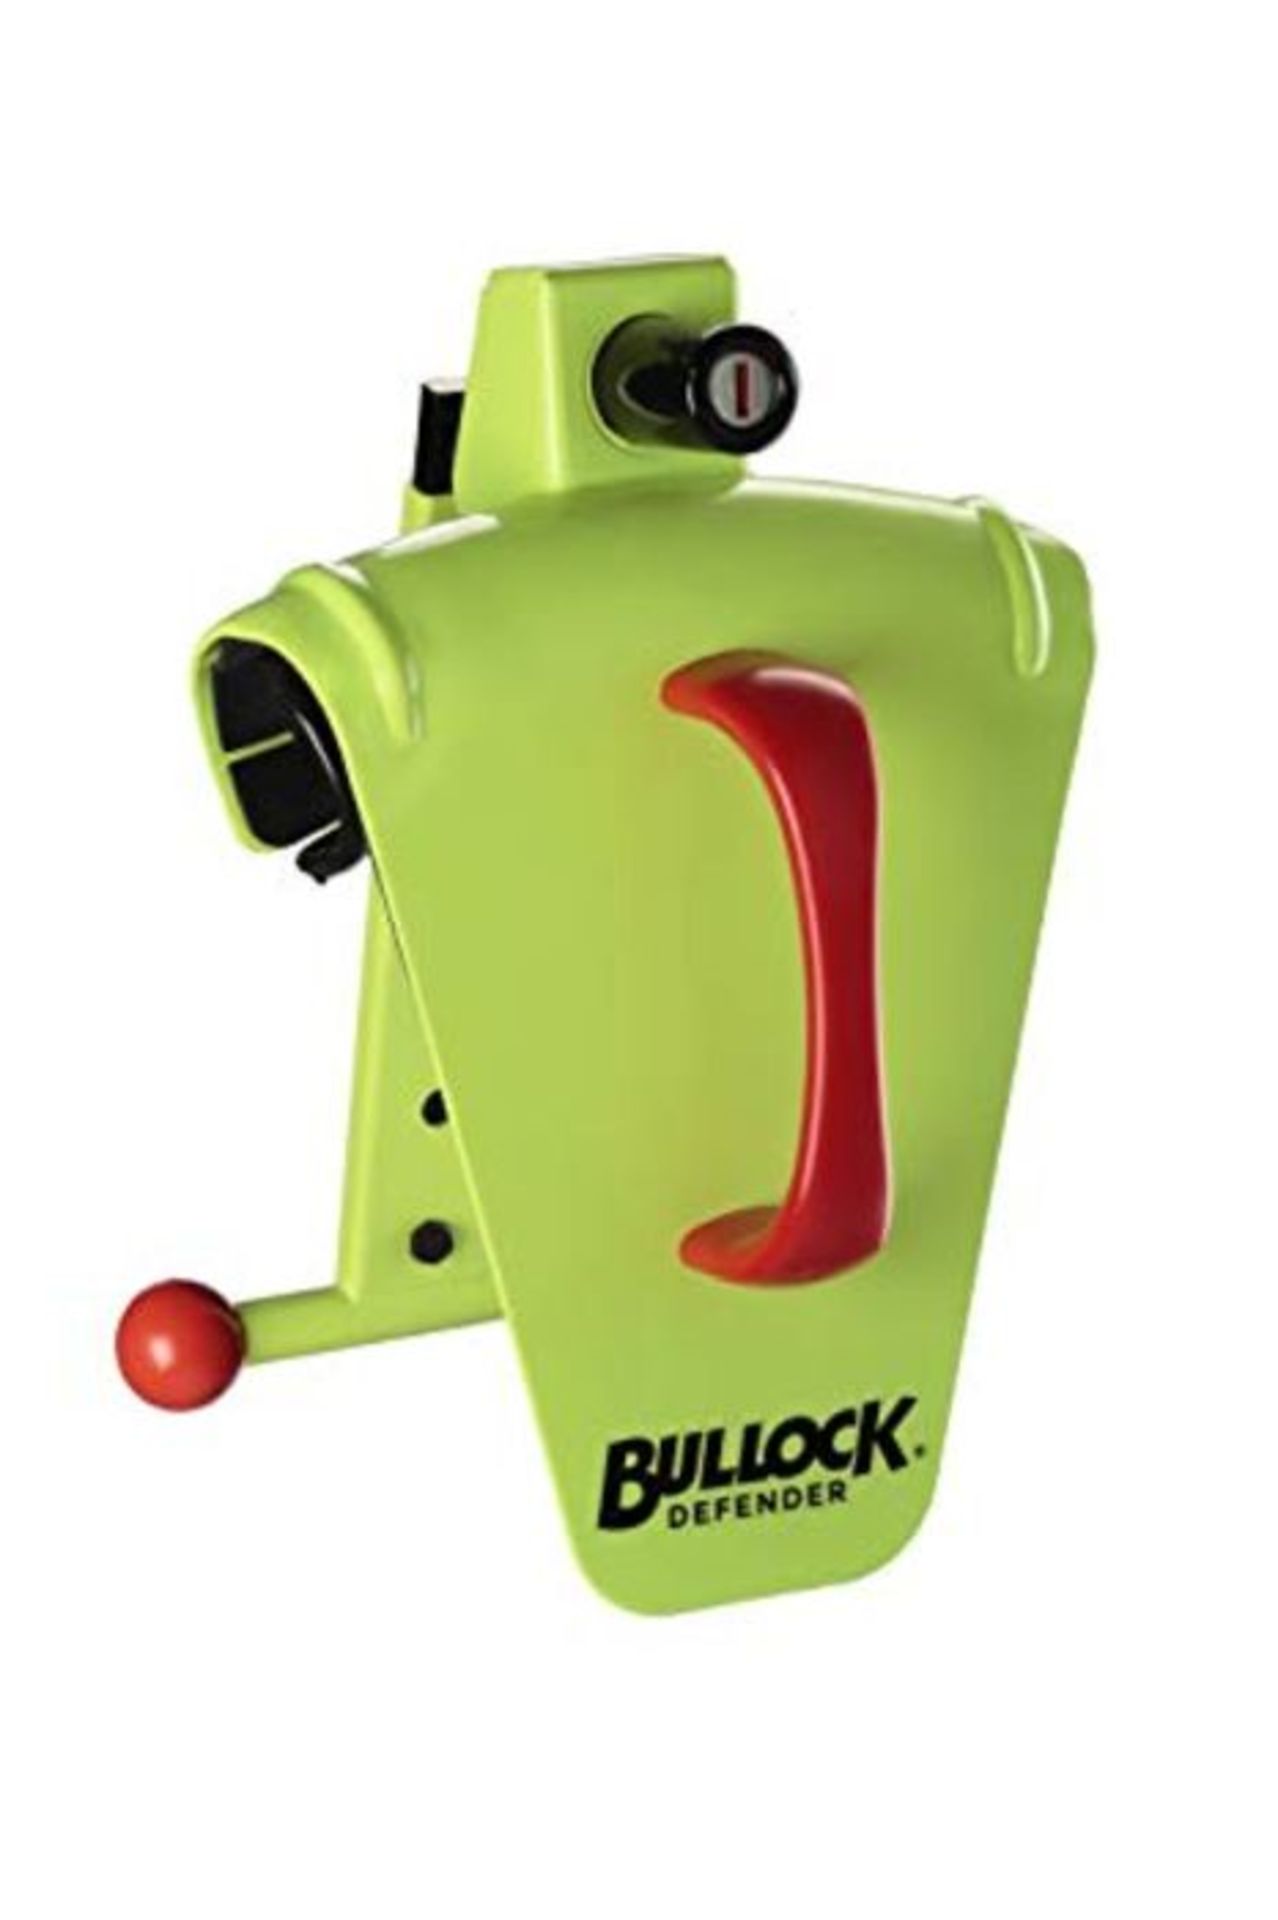 Bullock 146716, Defender, Antifurto Universale per Auto, Blocca Volante, con Scudo in